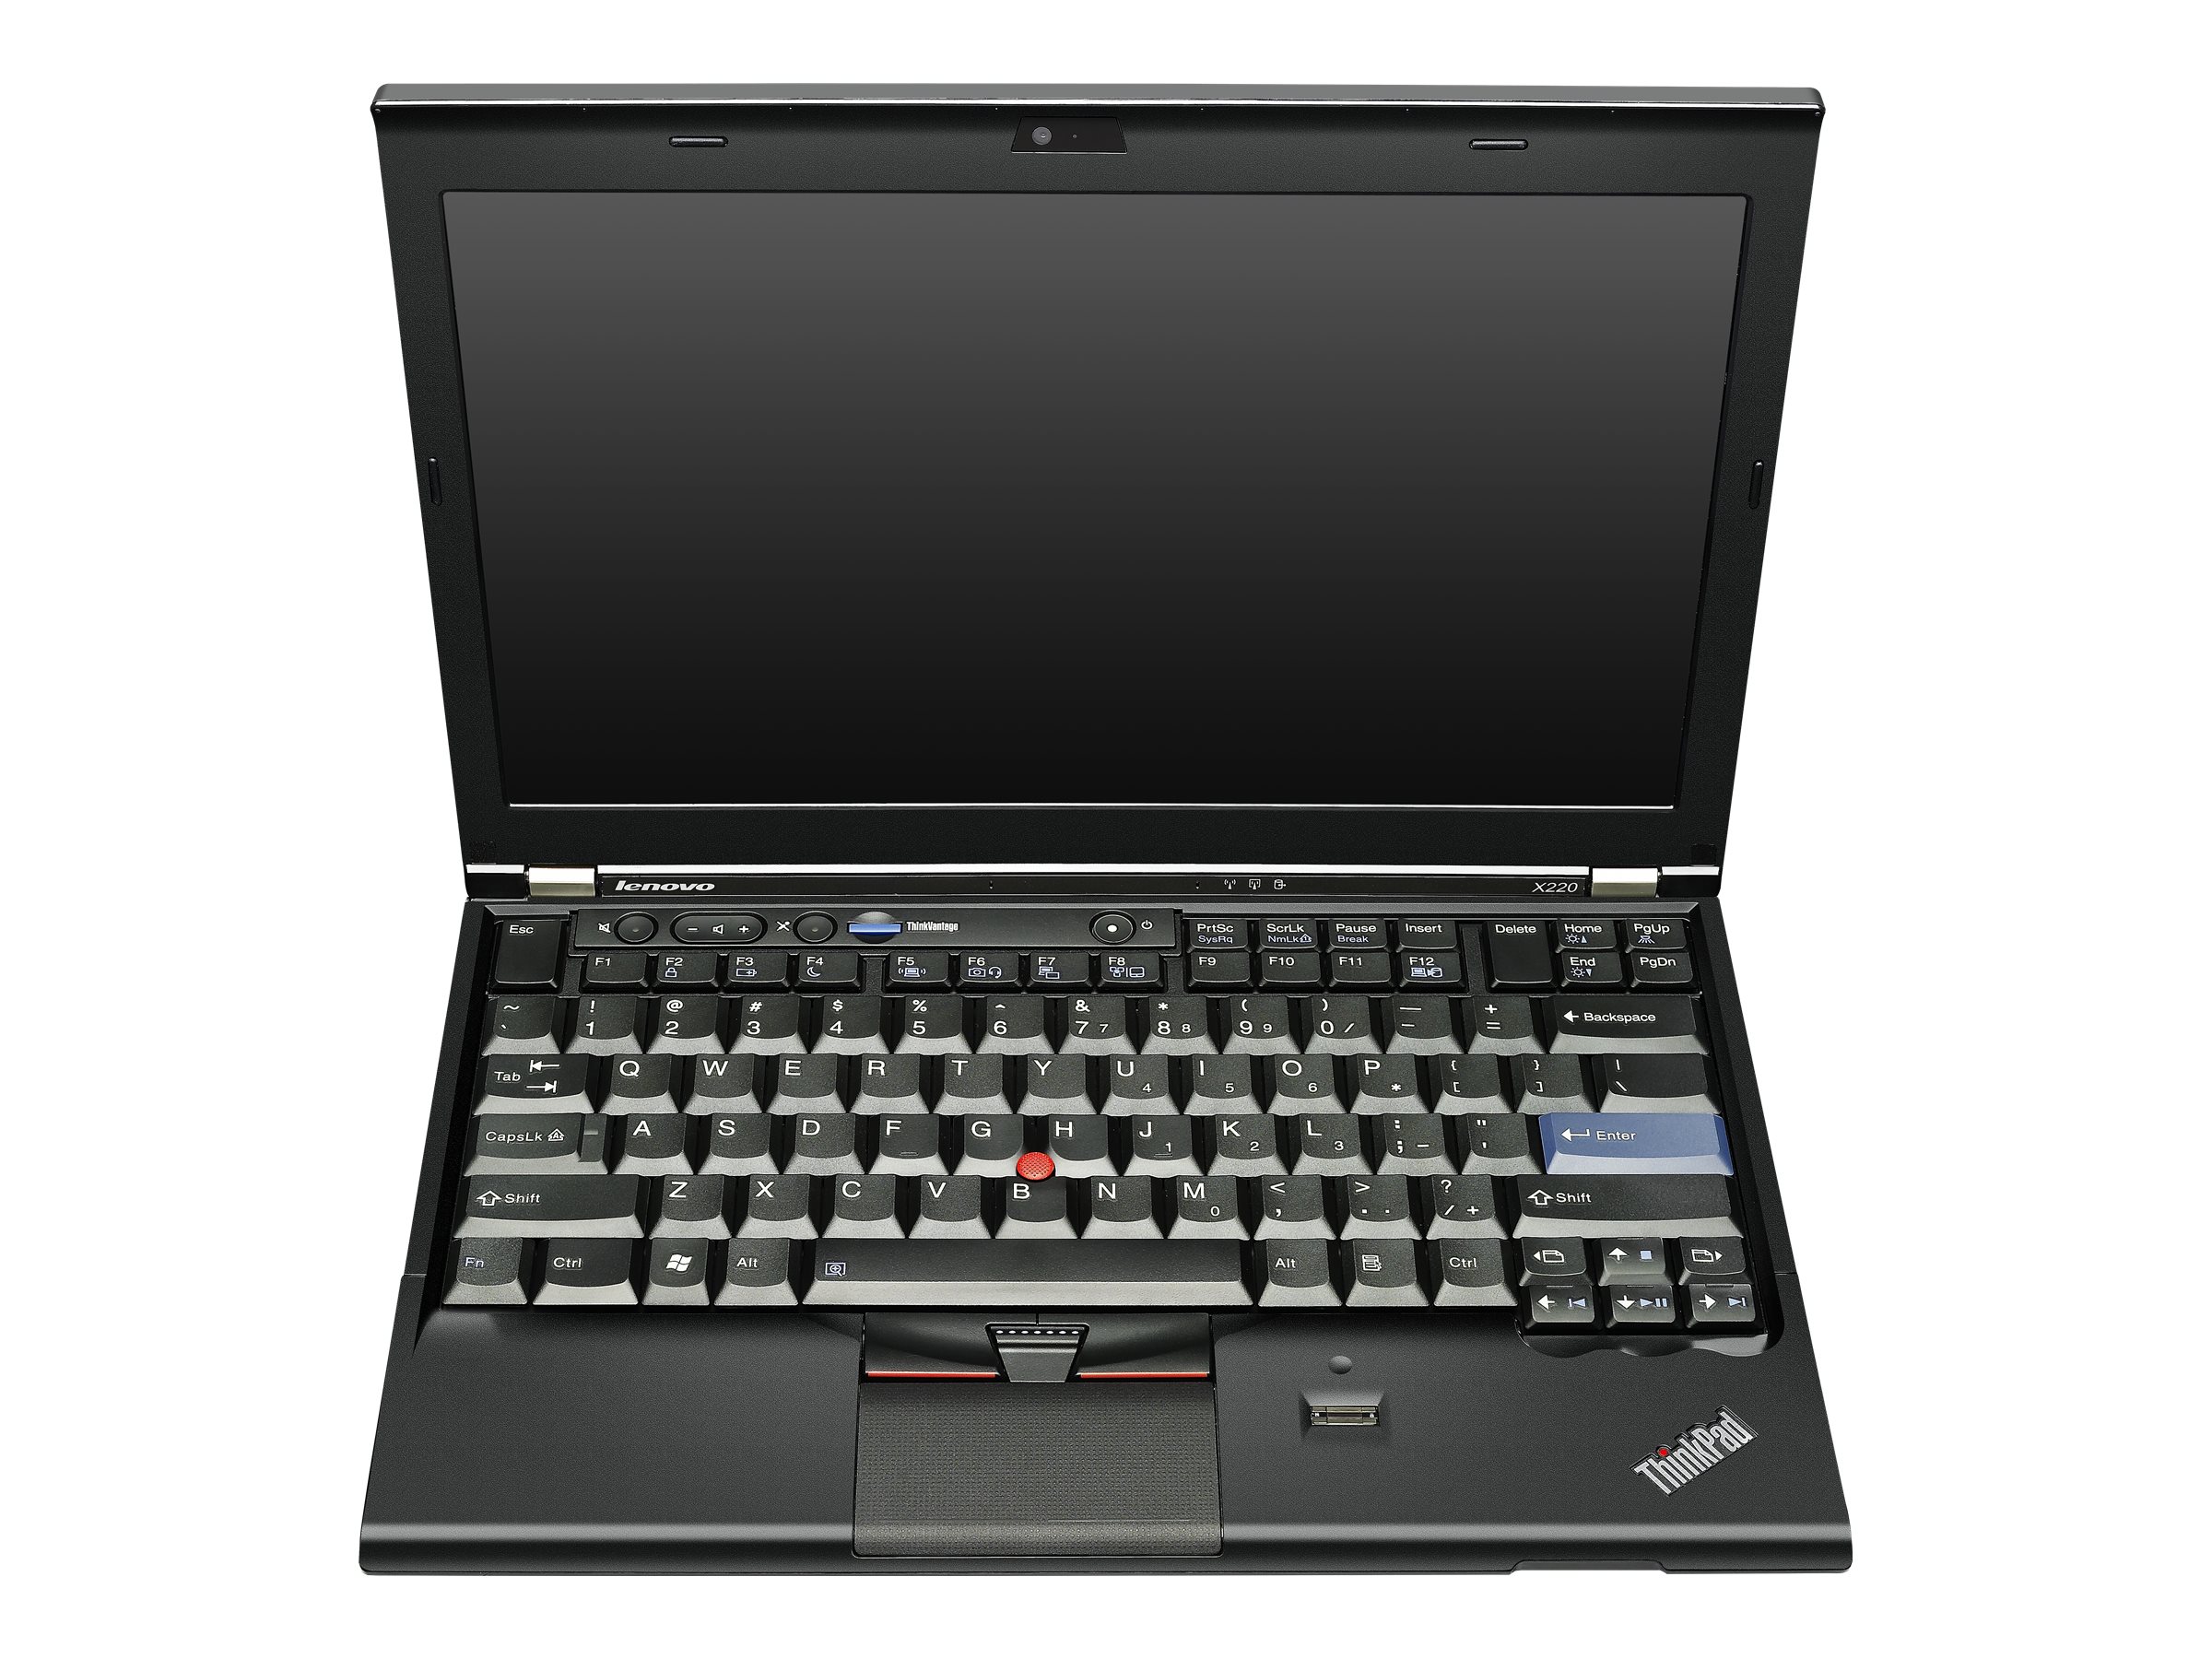 Lenovo ThinkPad X220 (4291)